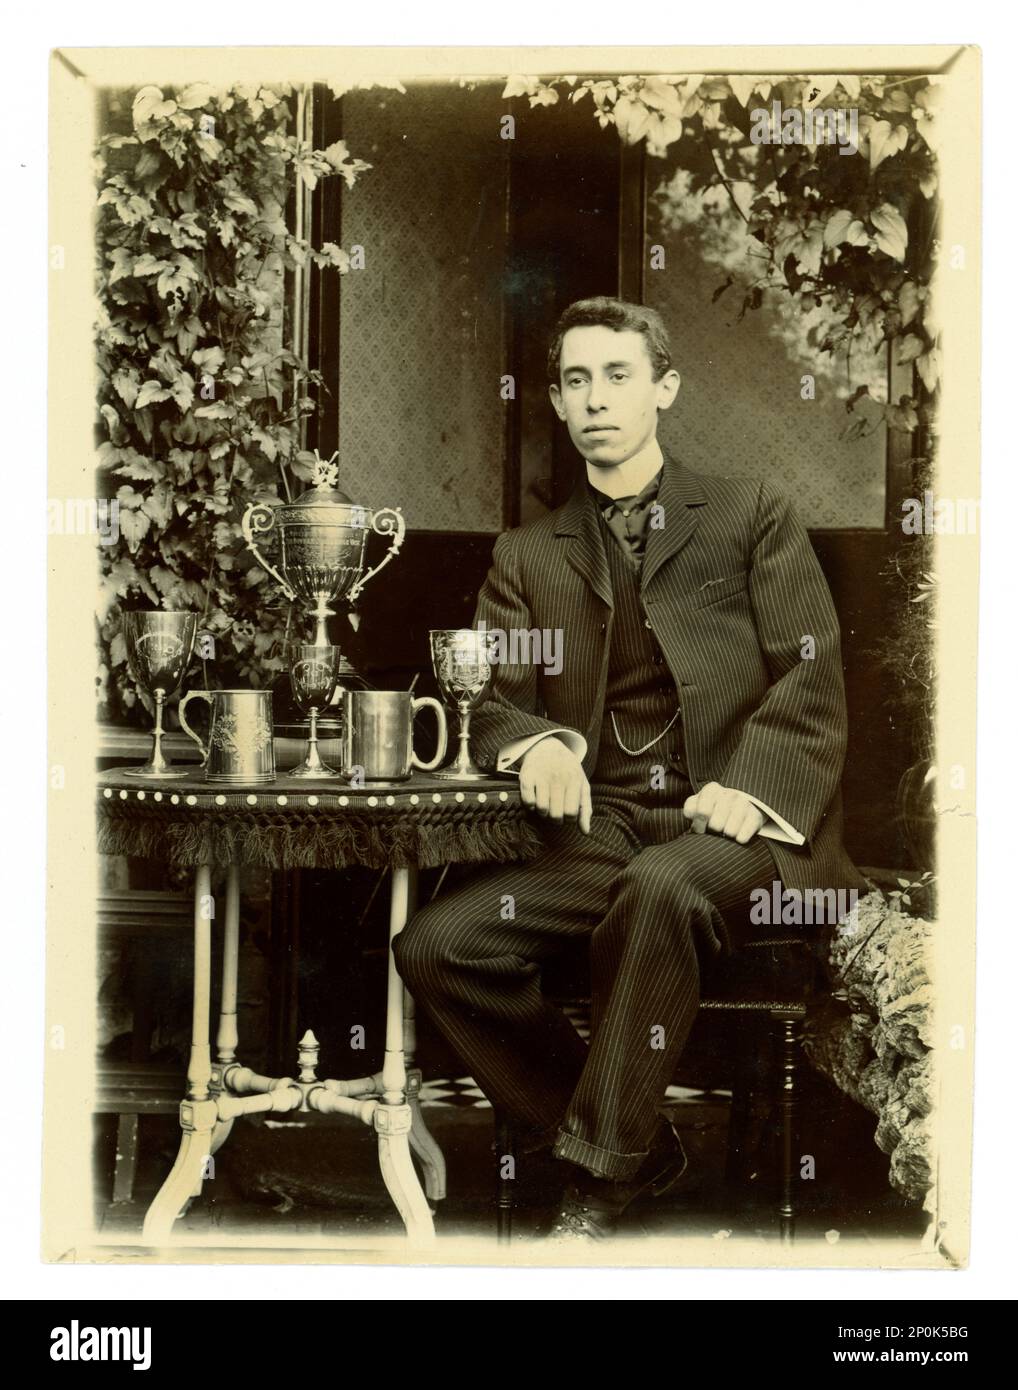 Photo victorienne originale de gent, sur une table, il y a un grand vase de défi de Worcester, / régate trophée pour l'aviron, et d'autres coupes, éventuellement membre d'une équipe de quatre en boîte. Région de Worcester, Royaume-Uni vers 1897-1899 Banque D'Images